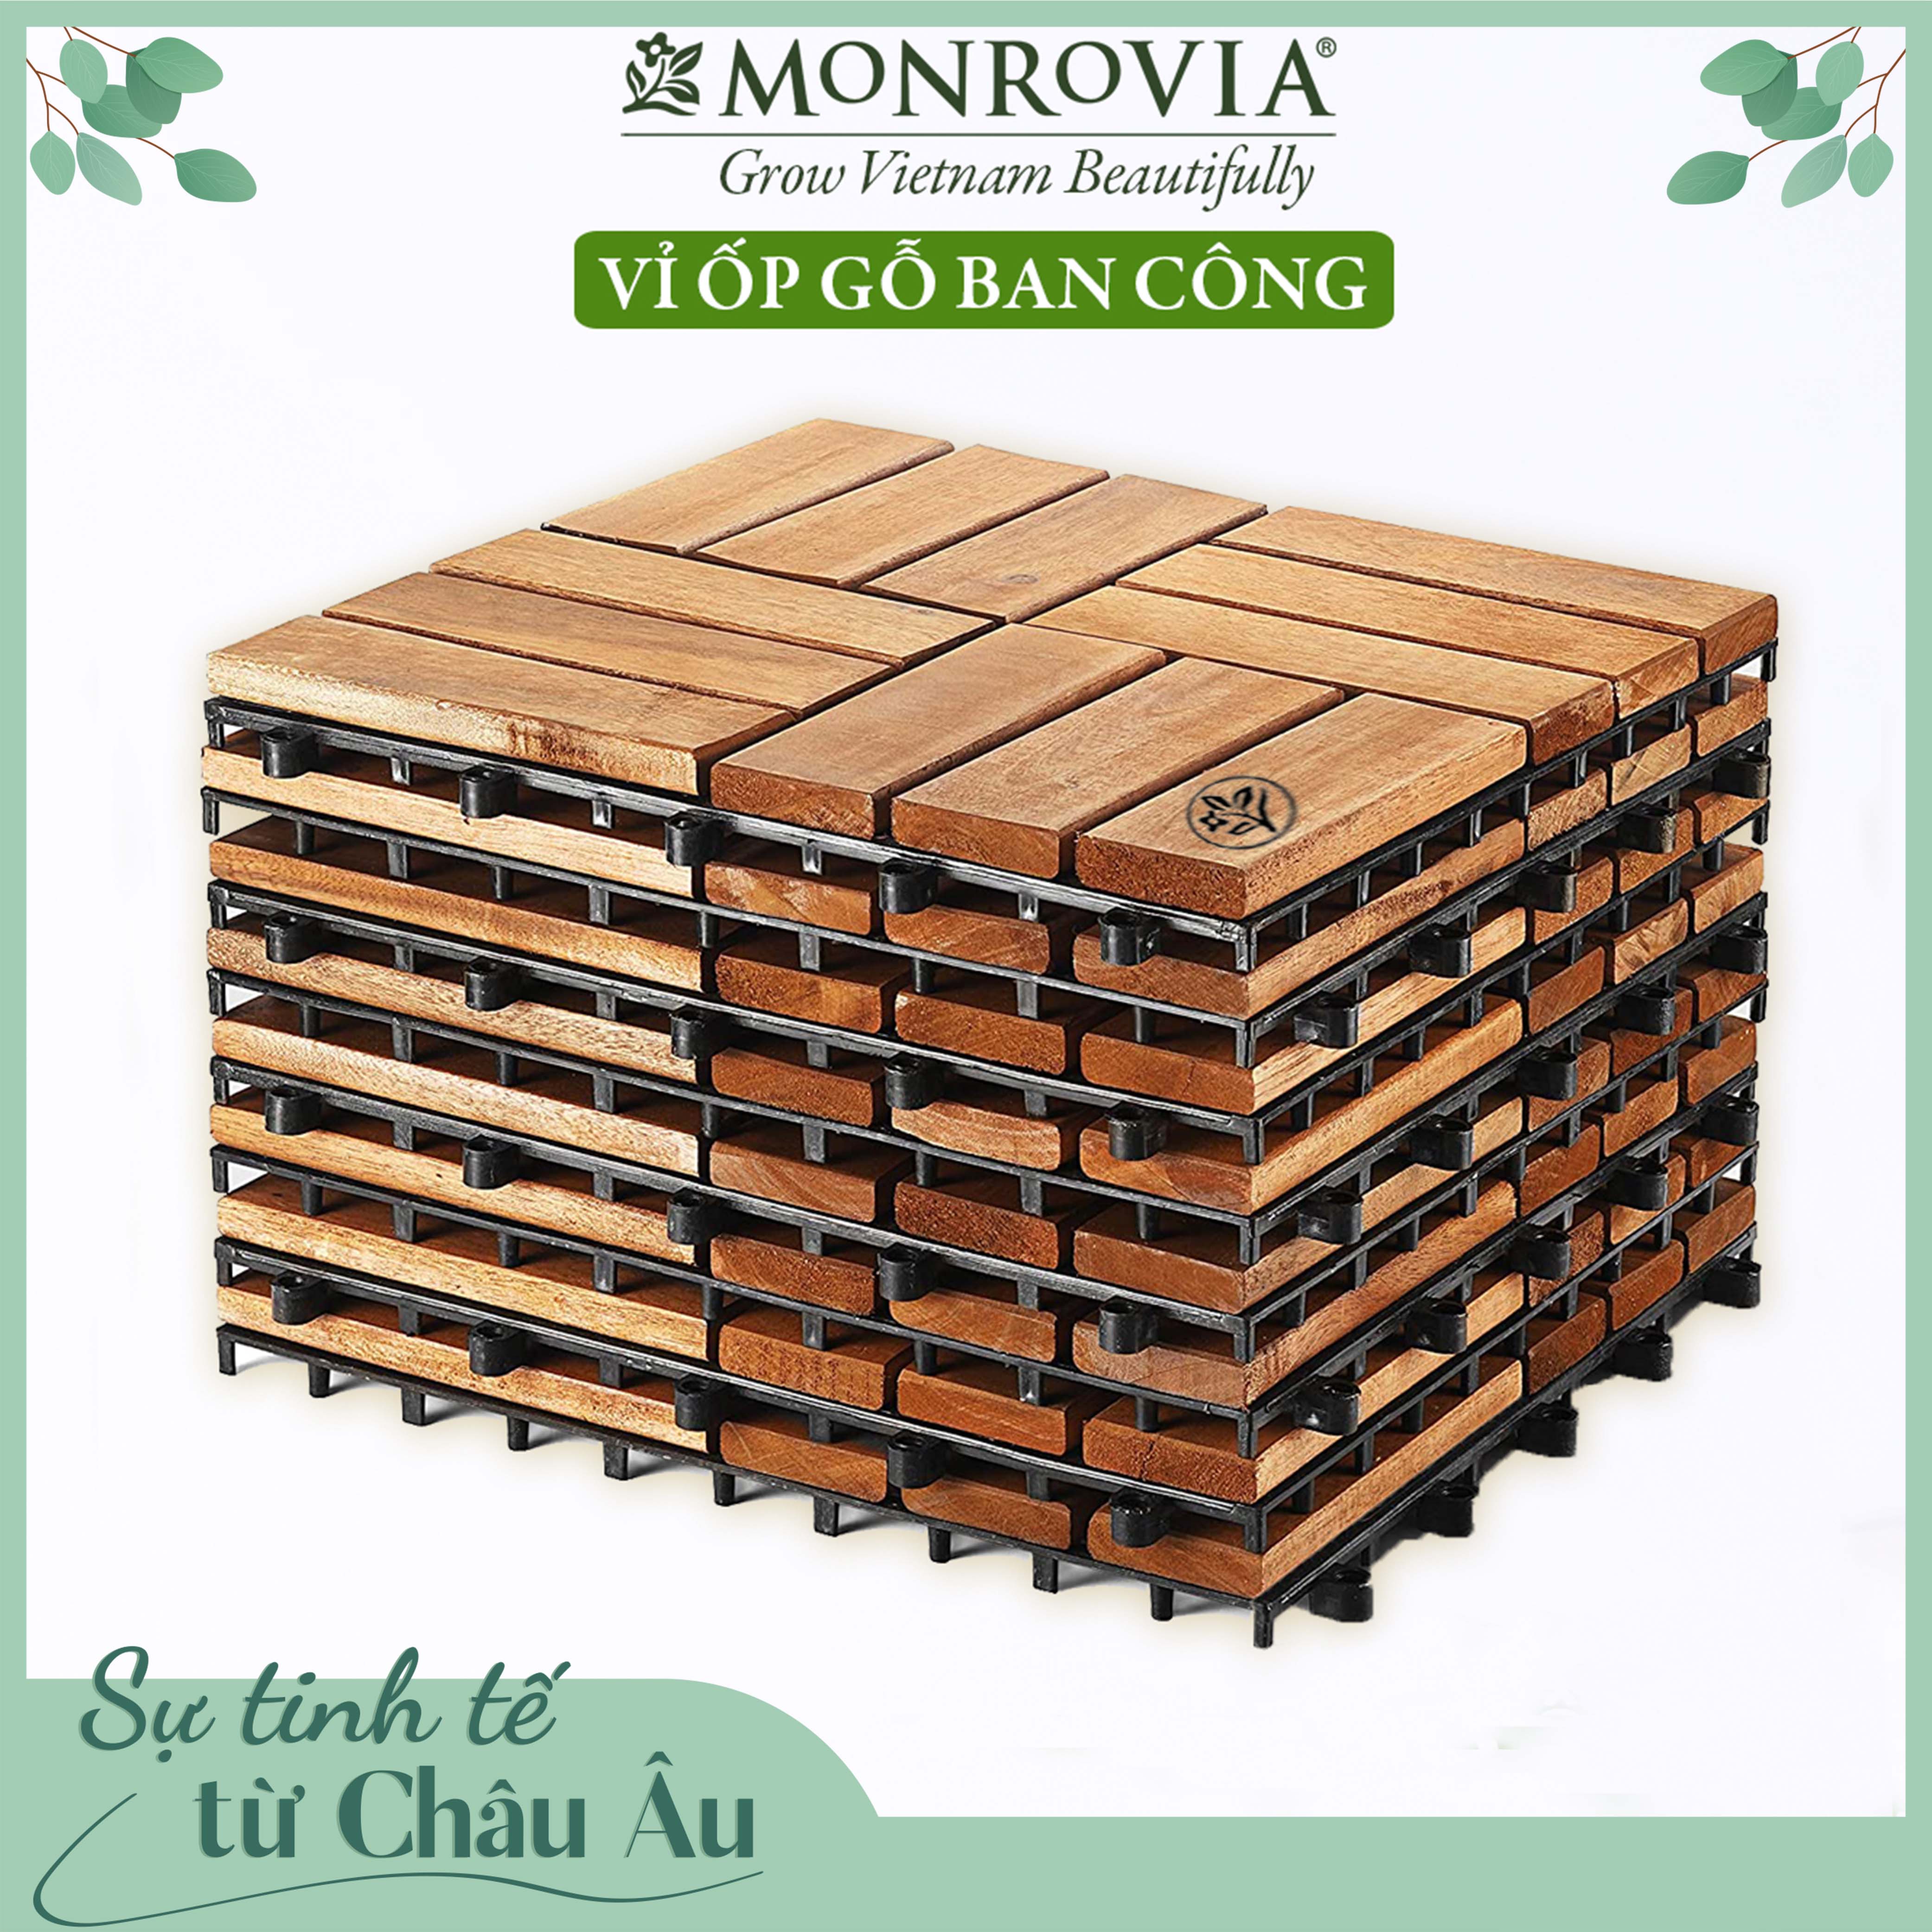 Ván gỗ lót sàn ban công thương hiệu MONROVIA, tiêu chuẩn Châu Âu, 9 Vỉ ốp gỗ lót sàn, vỉ nhựa gỗ lót ban công, ngoài trời, hành lang, sân vườn, hồ bơi, vỉ gỗ tự nhiên 12 nan hoặc 6 nan, siêu bền, chịu nước tốt